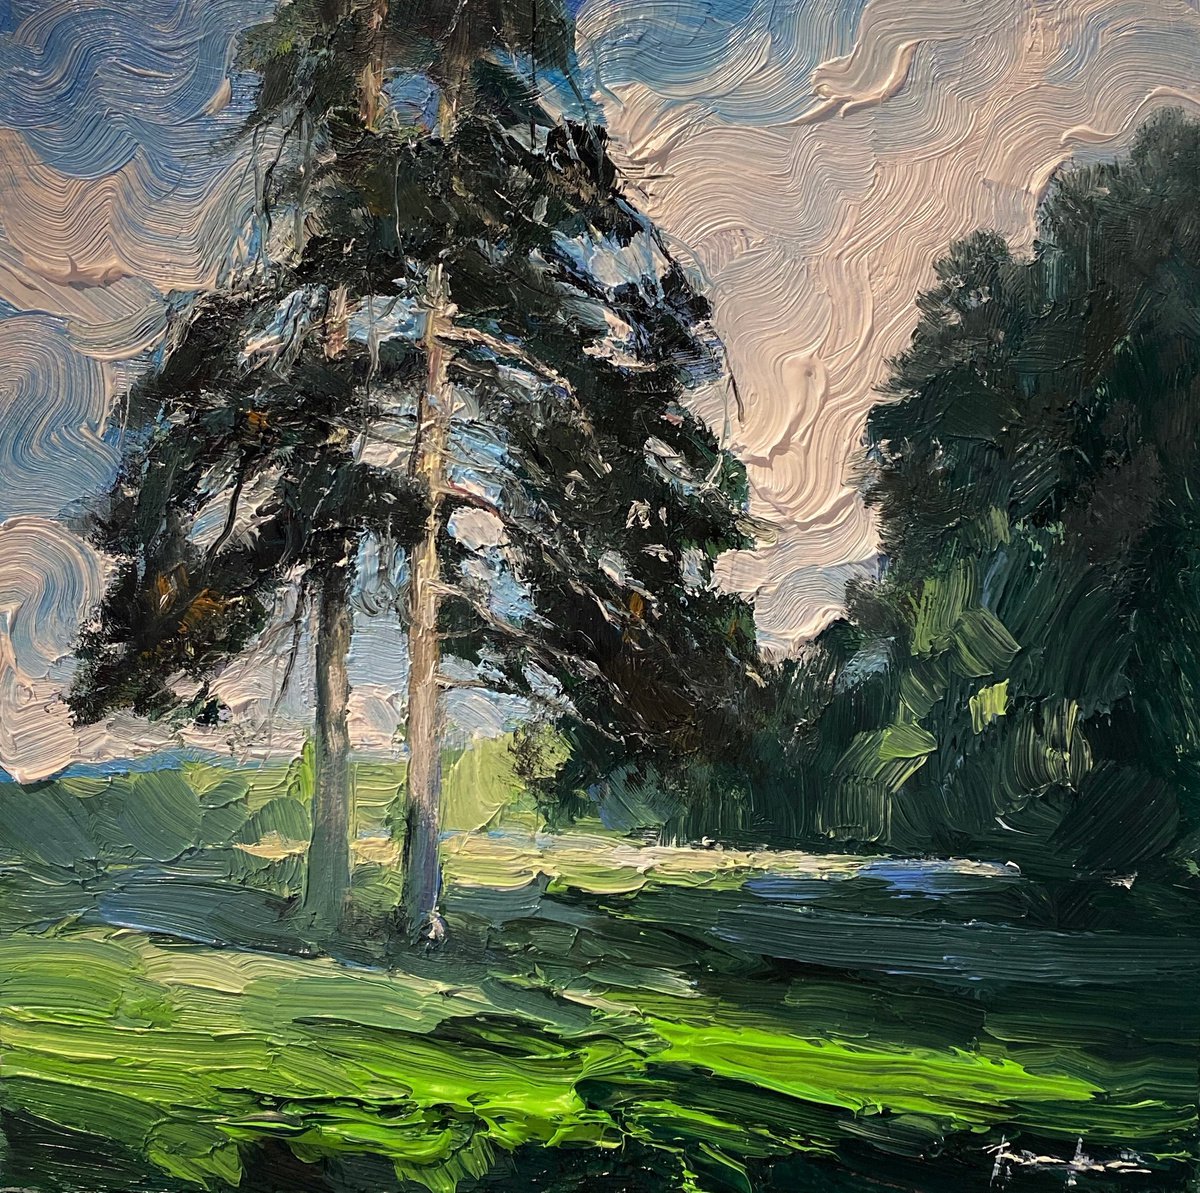  - Pinesoriginal oil painting by Artem Grunyka by Artem Grunyka